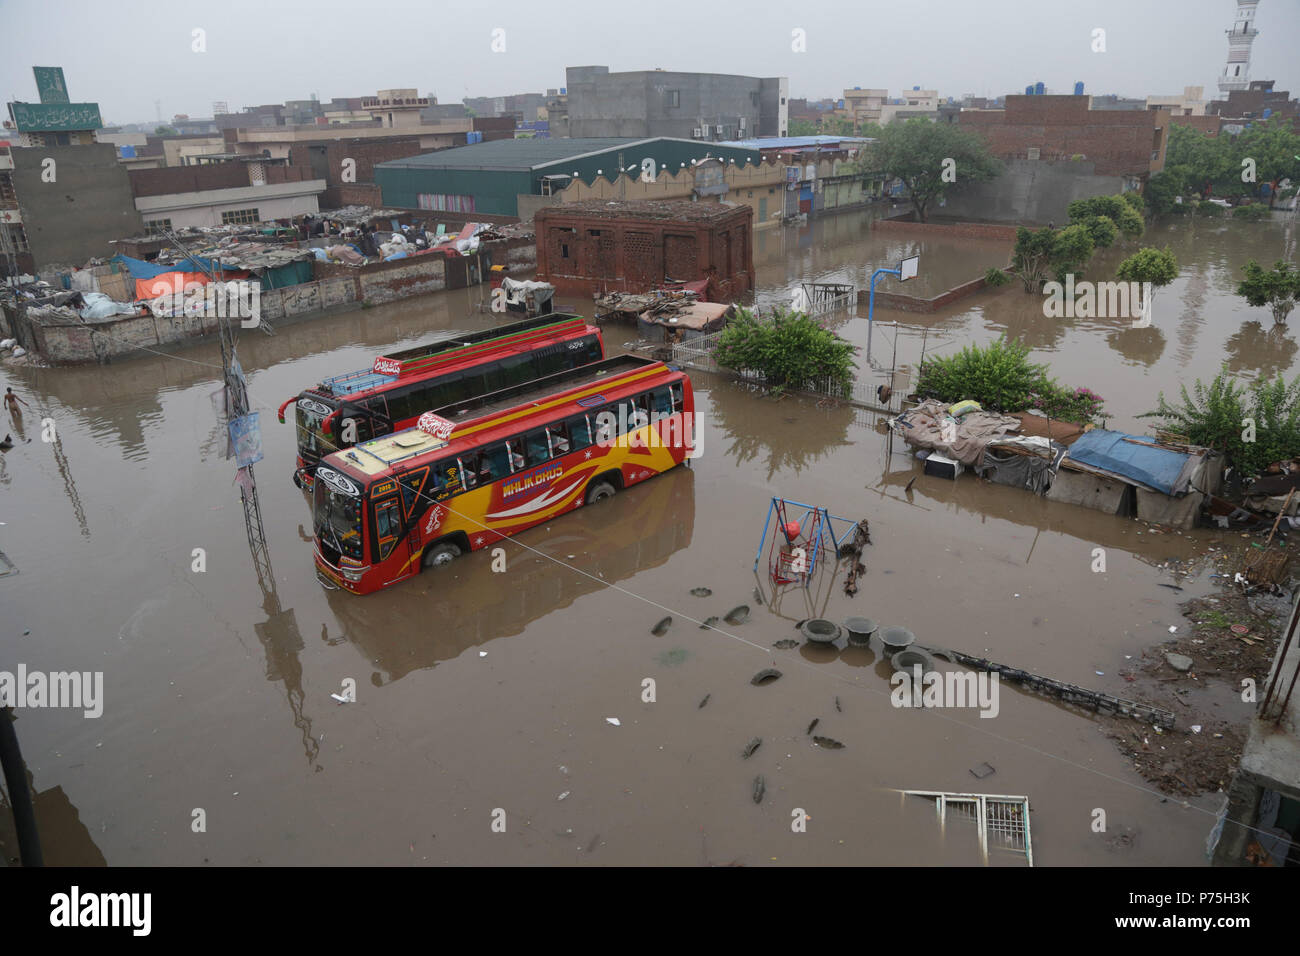 Pakistanische Einwohner von China Regelung durch Überflutete Straße nach dem heftigen Monsunregen in Lahore. Die laufenden vormonsun Regen spell hat wieder einmal schlagen die Stadt. Mindestens 6 Menschen wurden getötet, viele im Regen - Vorfälle verletzt. Gnadenlos als 238 mm Regen weitere drei Stunden den größten Teil der Stadt, die sich in den schlimmsten Staus sowie ernsthafte Unannehmlichkeiten für die Bürger überschwemmt. Das Met Office hat gesagt, dass aufgrund der hohen Druck Monsun Ströme durchdringen im Land, die Punjab Hauptstadt sowie anderen Städten, weiterhin Regen für die nächsten zwei zu erhalten d Stockfoto